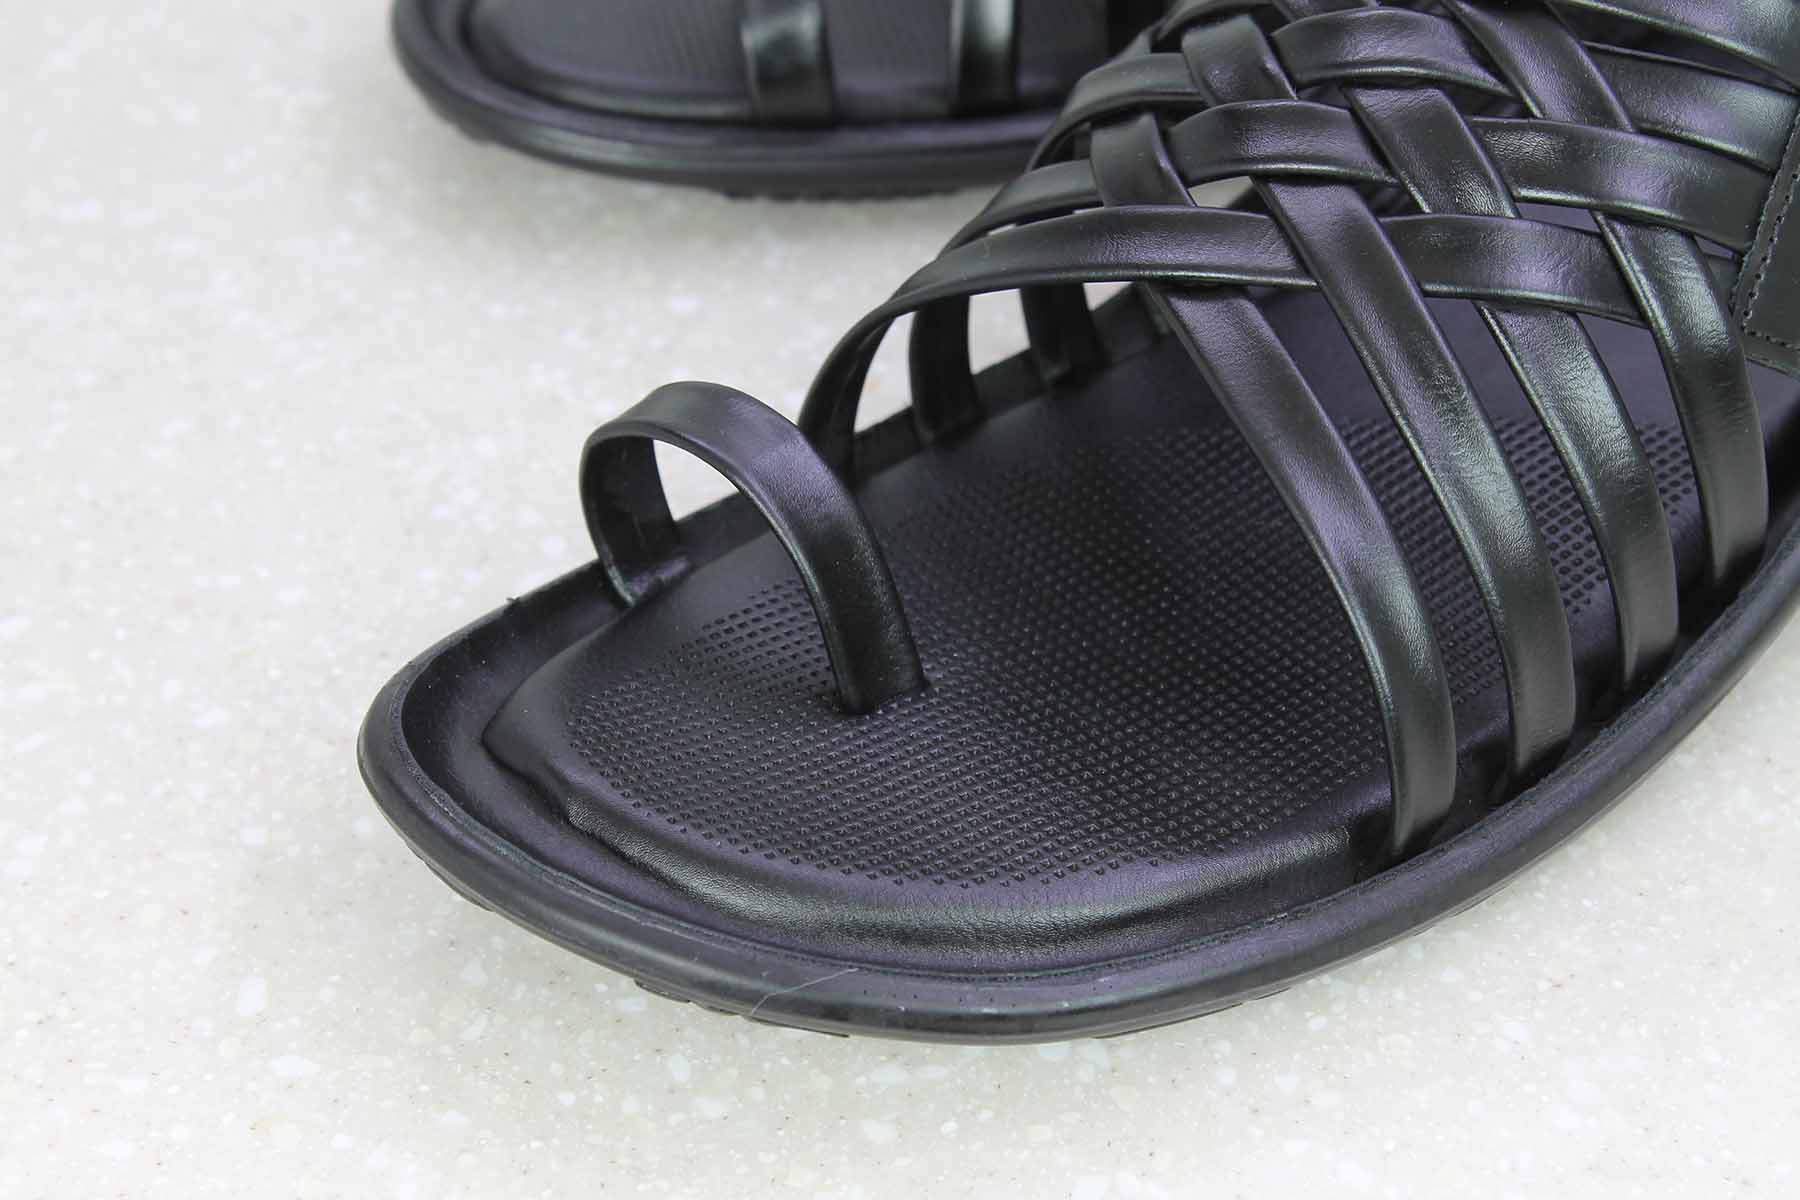 TRI-BAND VELCRO SANDAL-BLACK-Men's Sandal-Inc5 Shoes